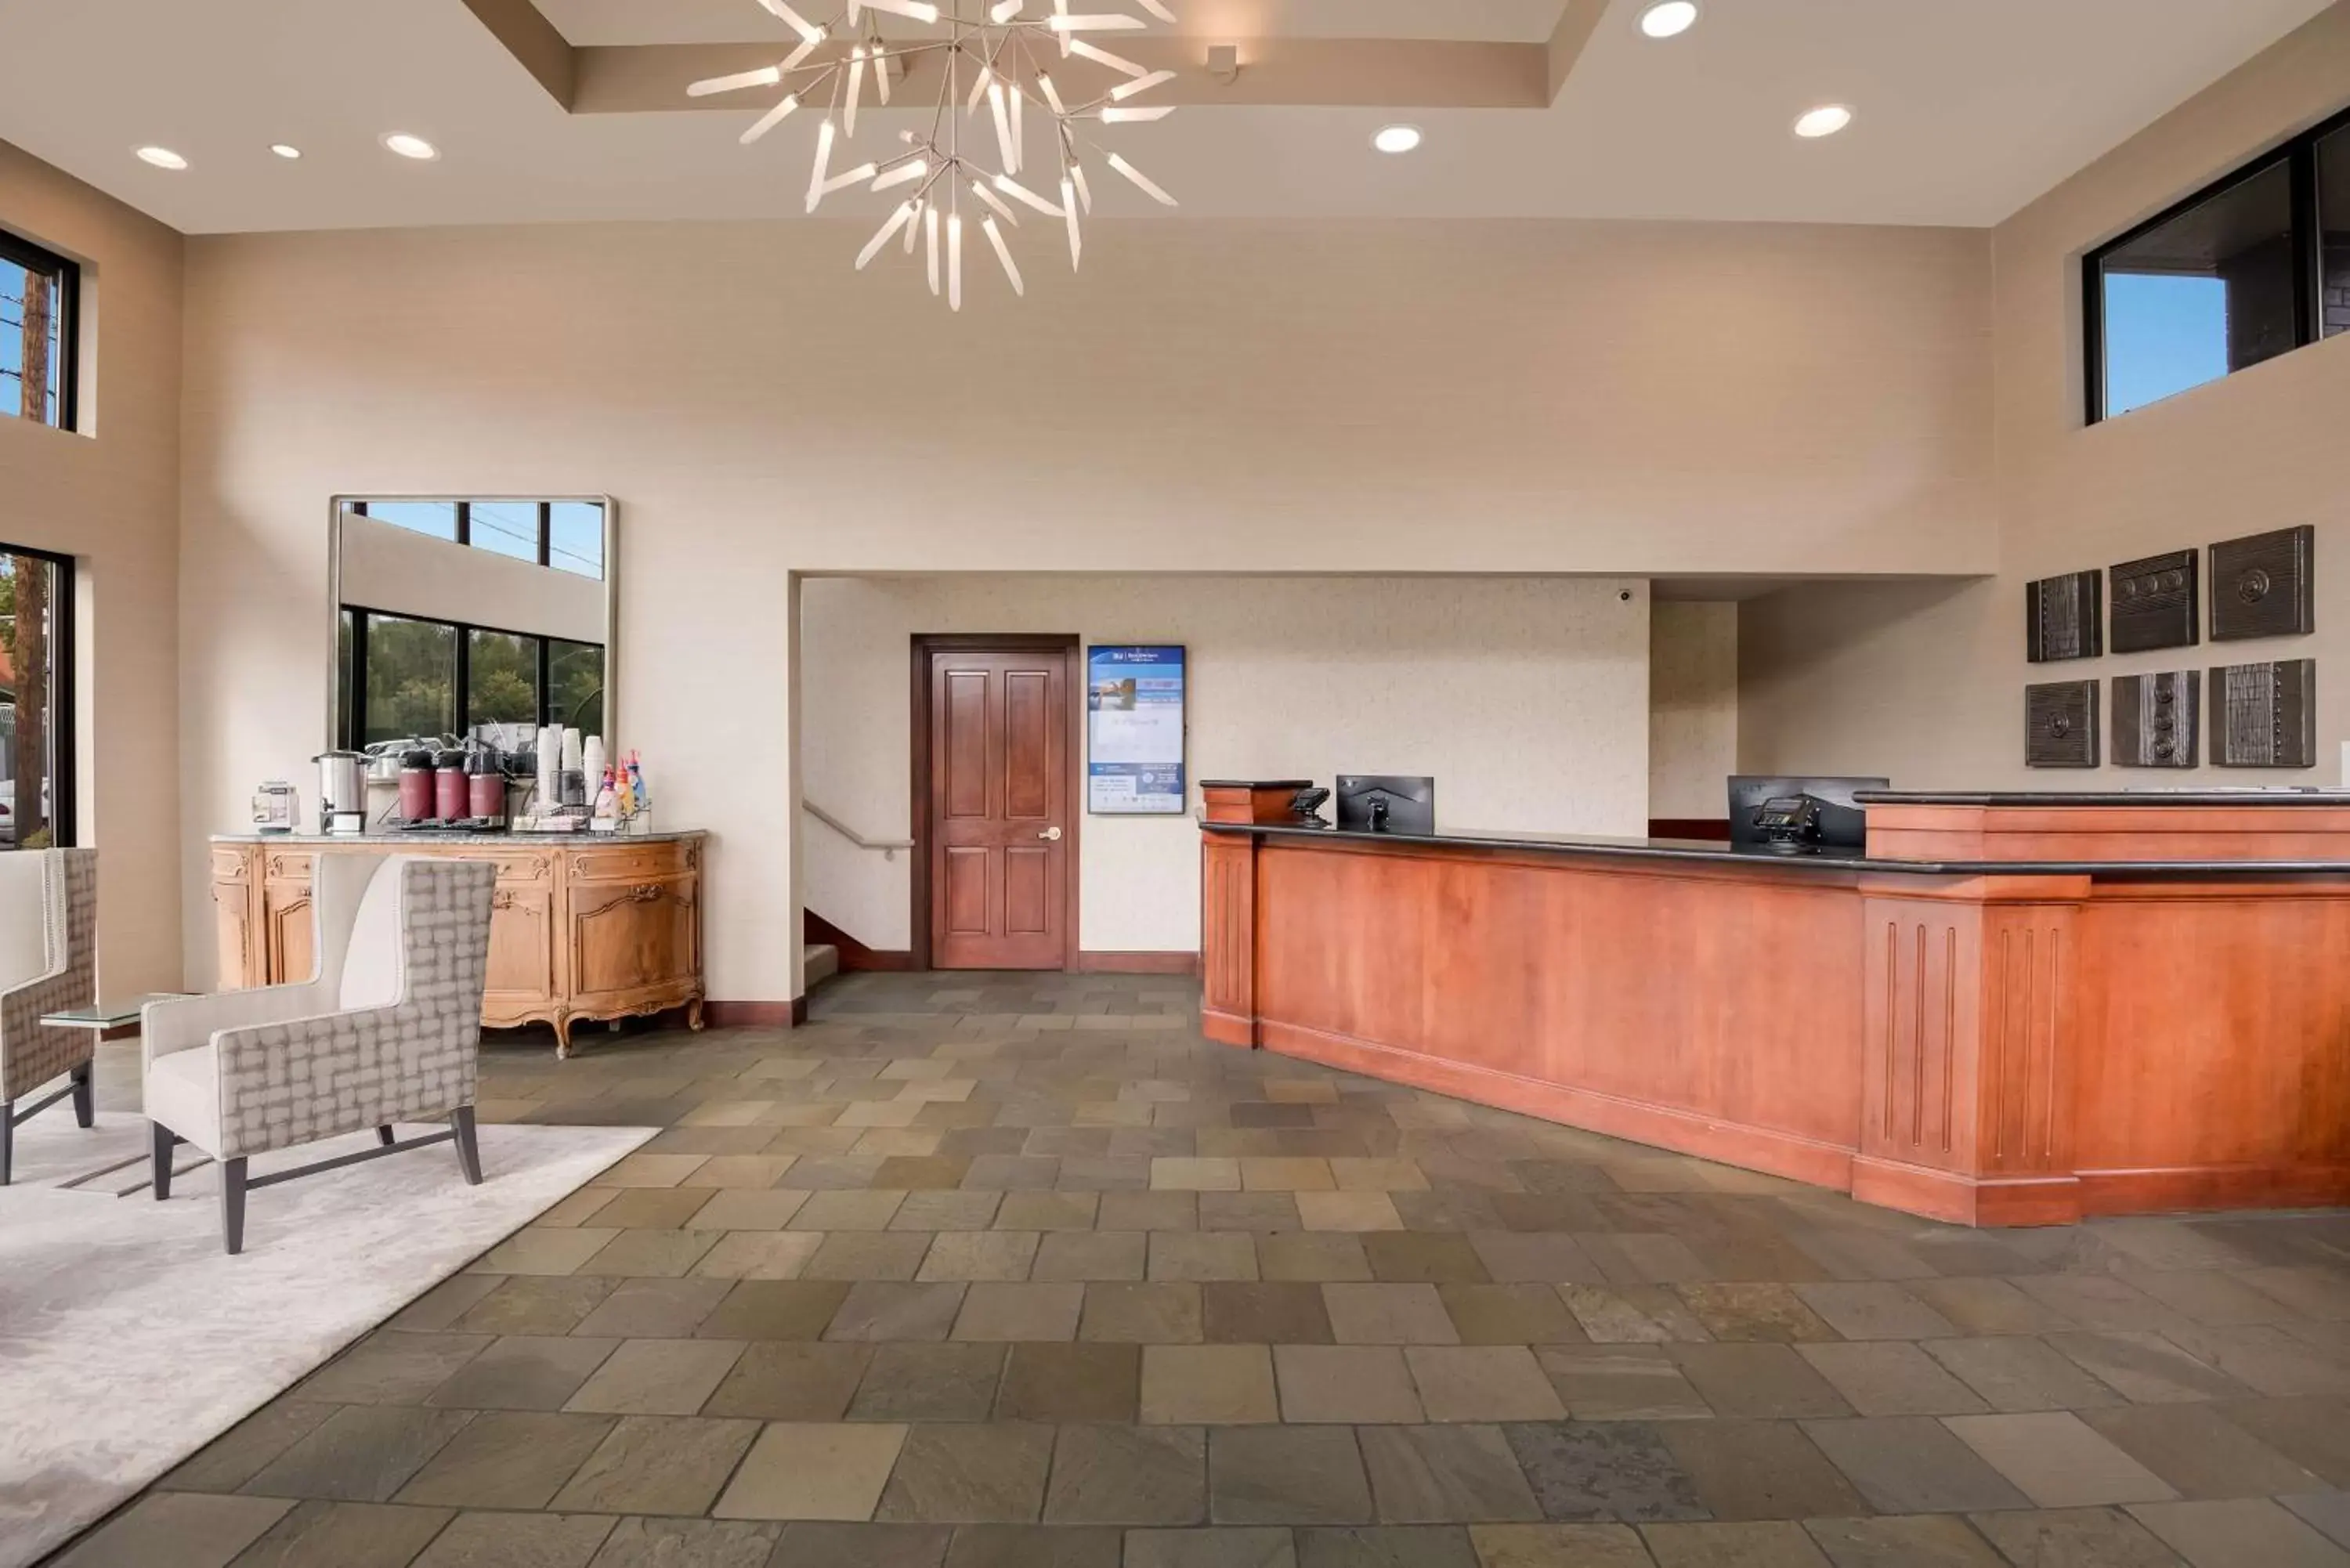 Lobby or reception, Lobby/Reception in Best Western New Oregon Motel